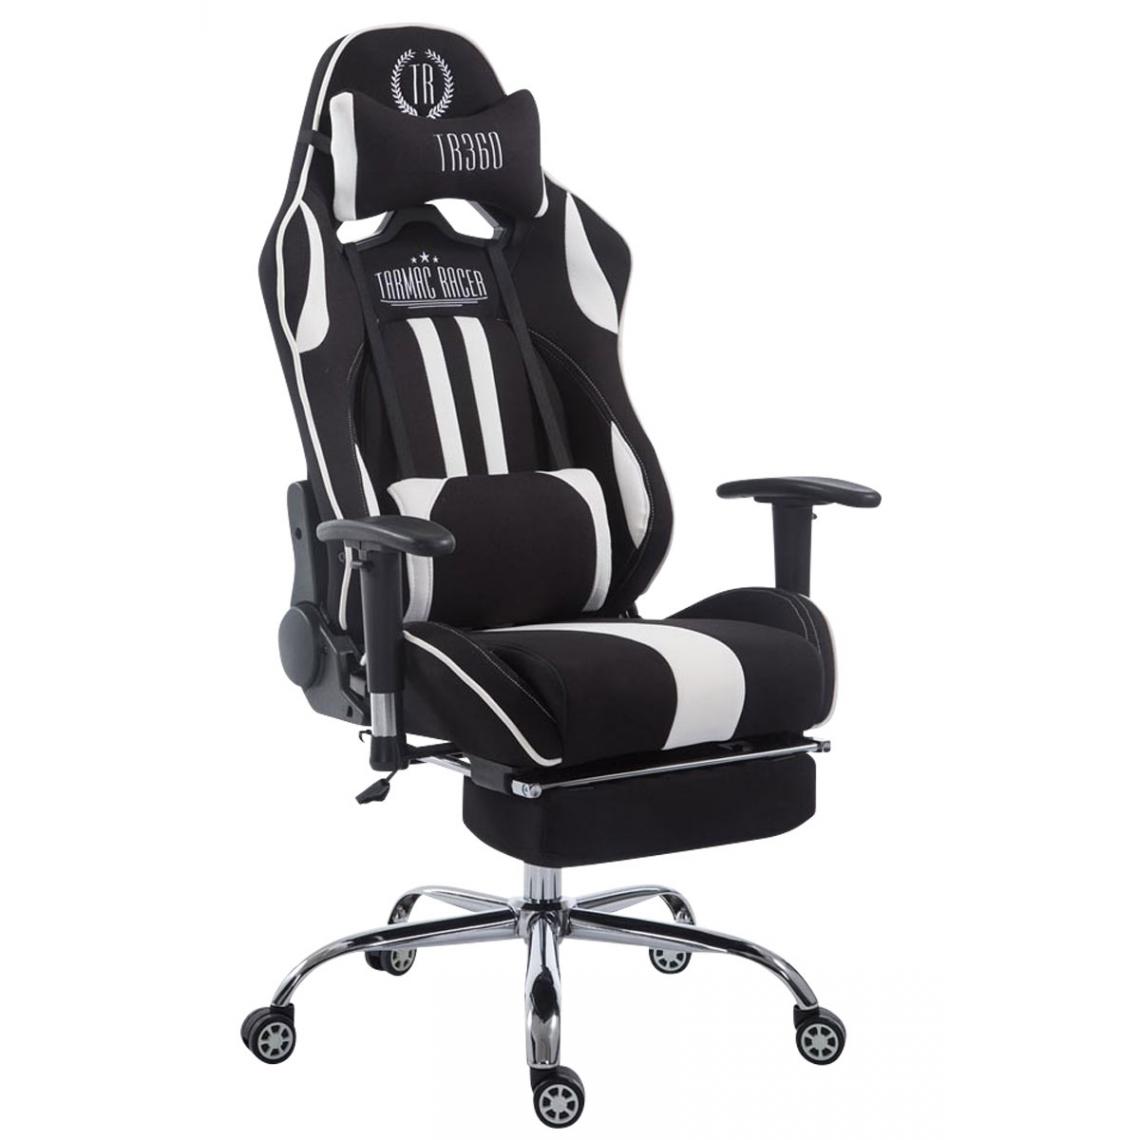 Icaverne - sublime Chaise de bureau ligne Luanda Limit V2 en tissu avec repose-pieds couleur noir et blanc - Chaises